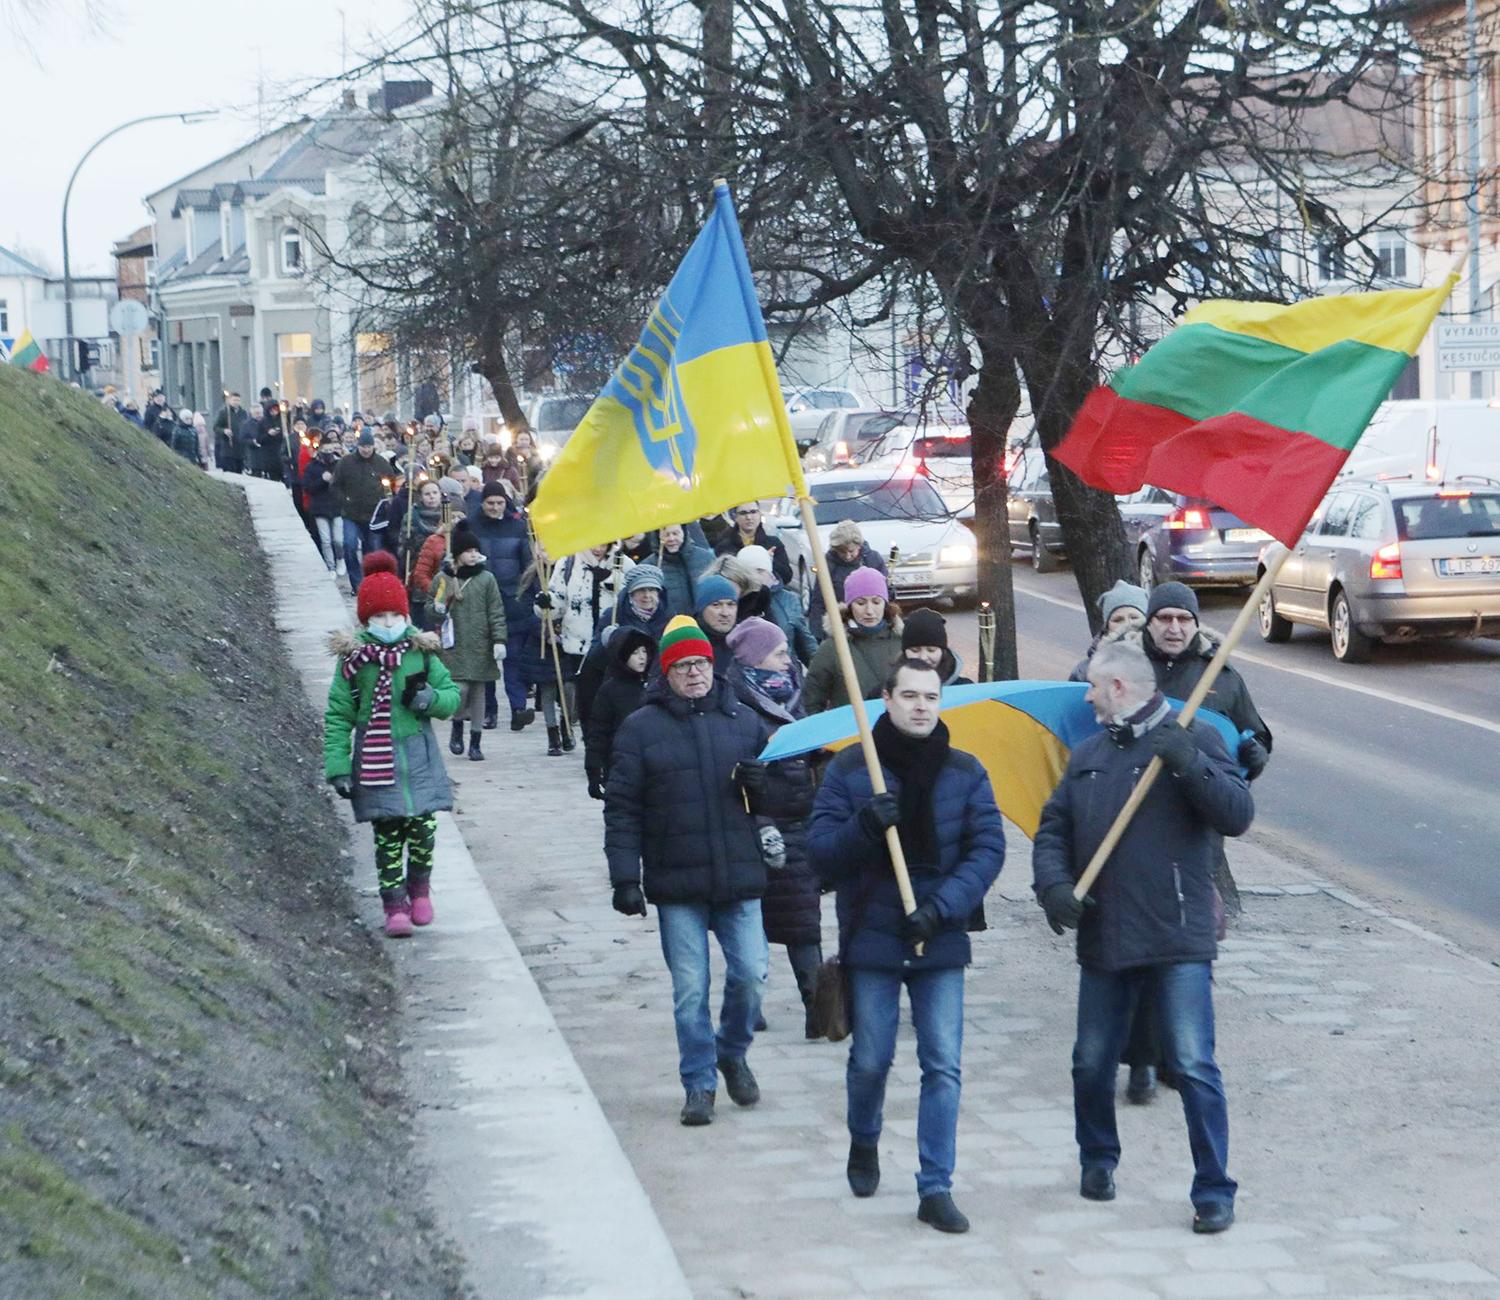 Ukmergiškiai reiškia paramą Ukrainai / Pirmą karo Ukrainoje dieną ukmergiškiai prisijungė prie šią šalį palaikančios akcijos.  Dainiaus Vyto nuotr.